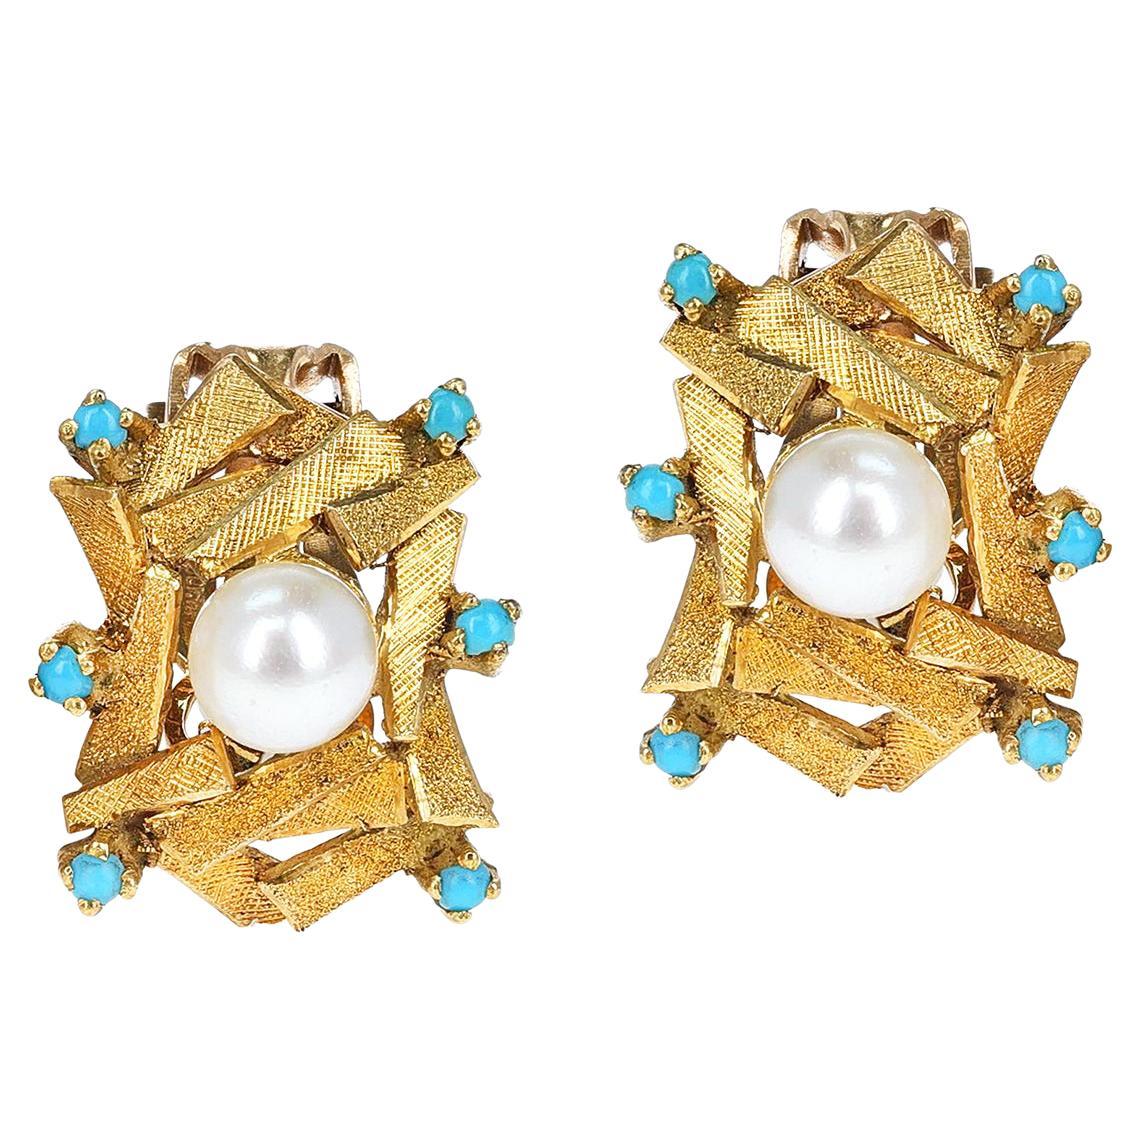 Boucles d'oreilles en or, or et perles avec cabochon de turquoise, faisant partie de l'ensemble 